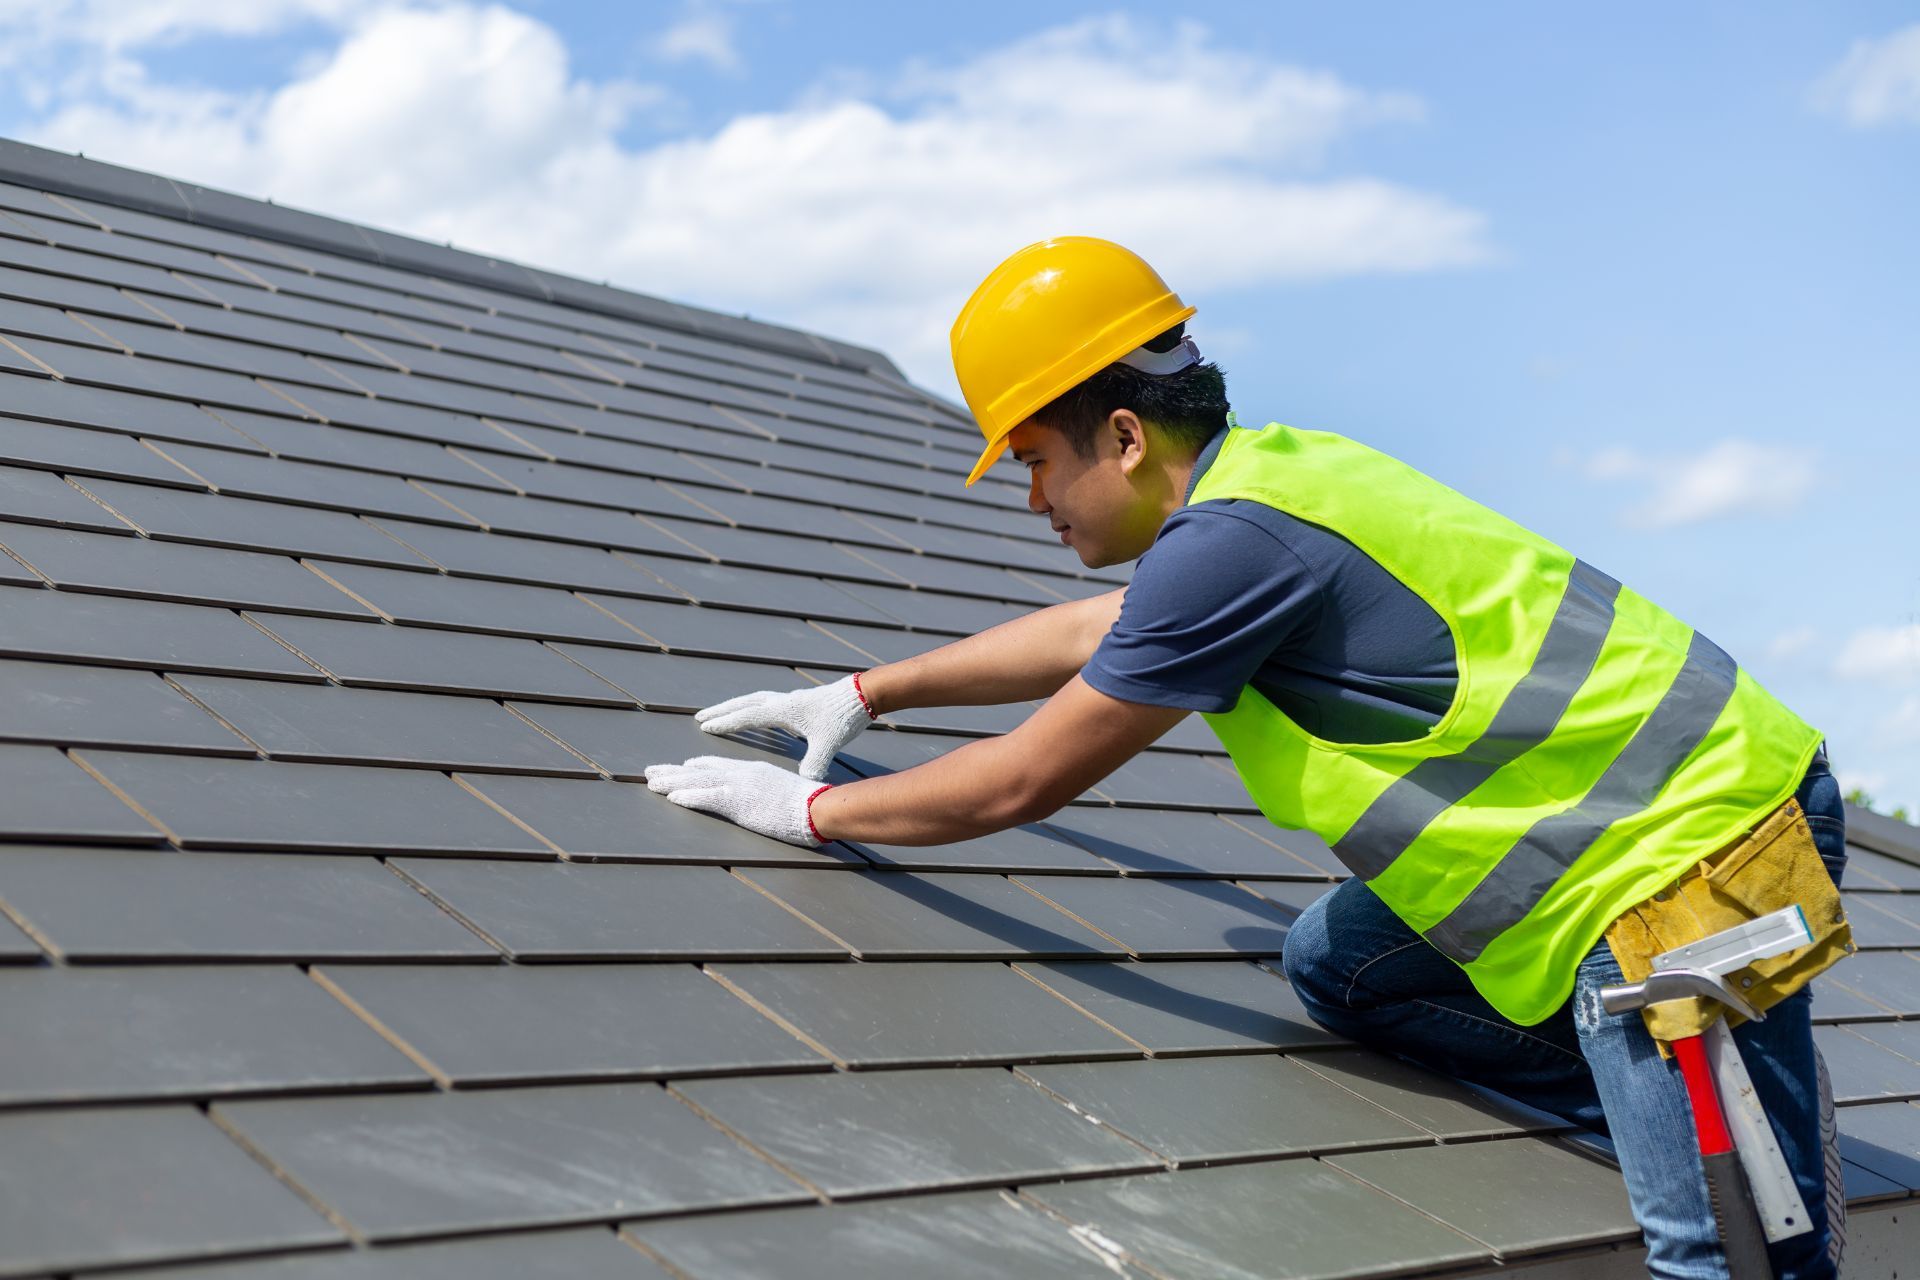 Worker adjusting roof tile